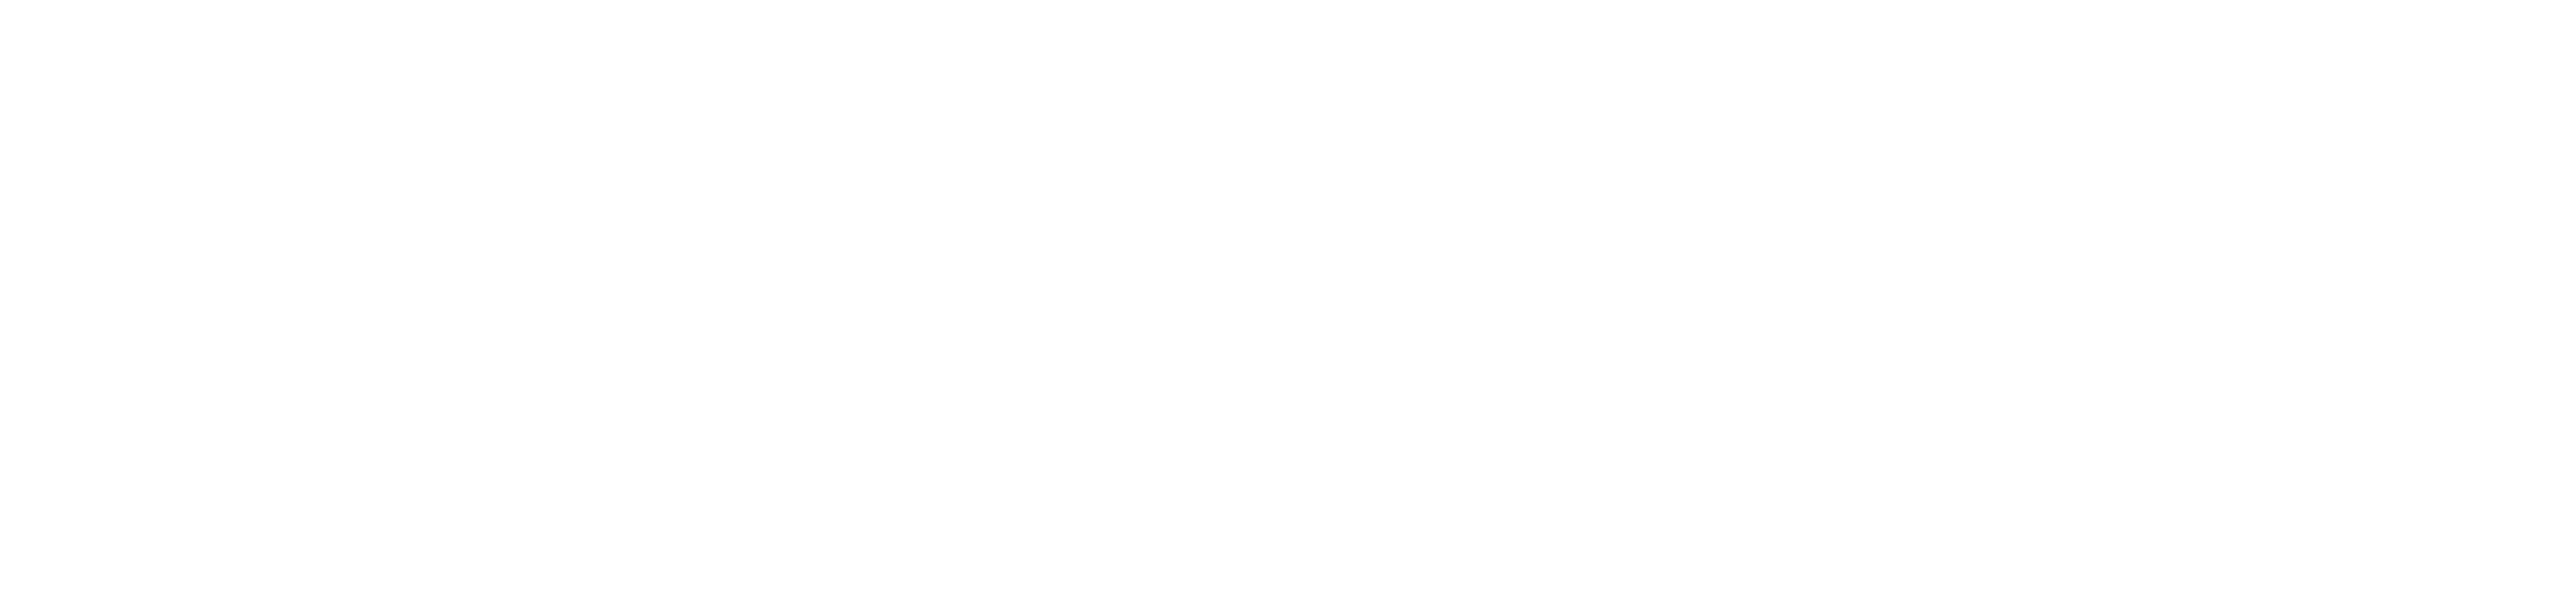 Federico Circi | Psicologo Psicoterapeuta